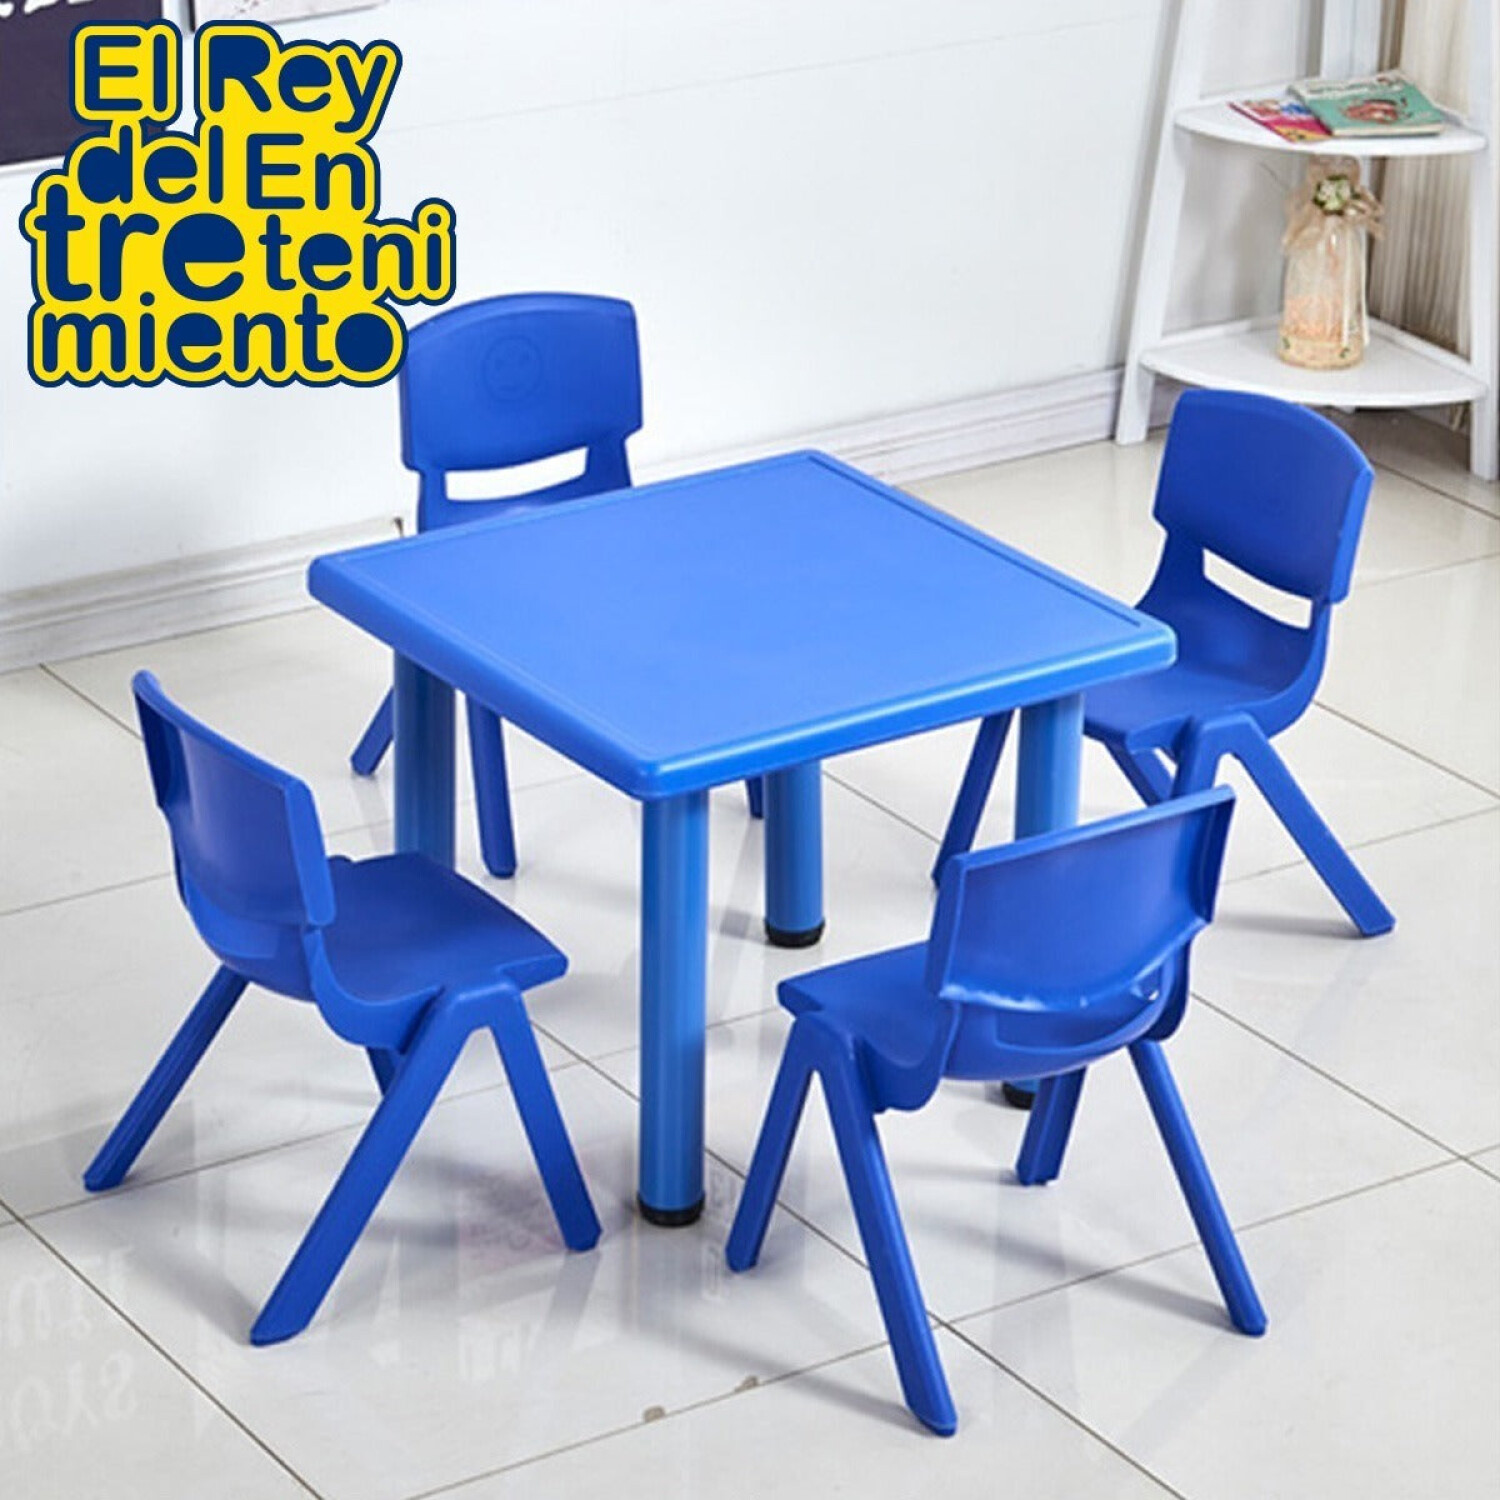 Silla de mesa de plástico infantil, mesas y sillas de plástico